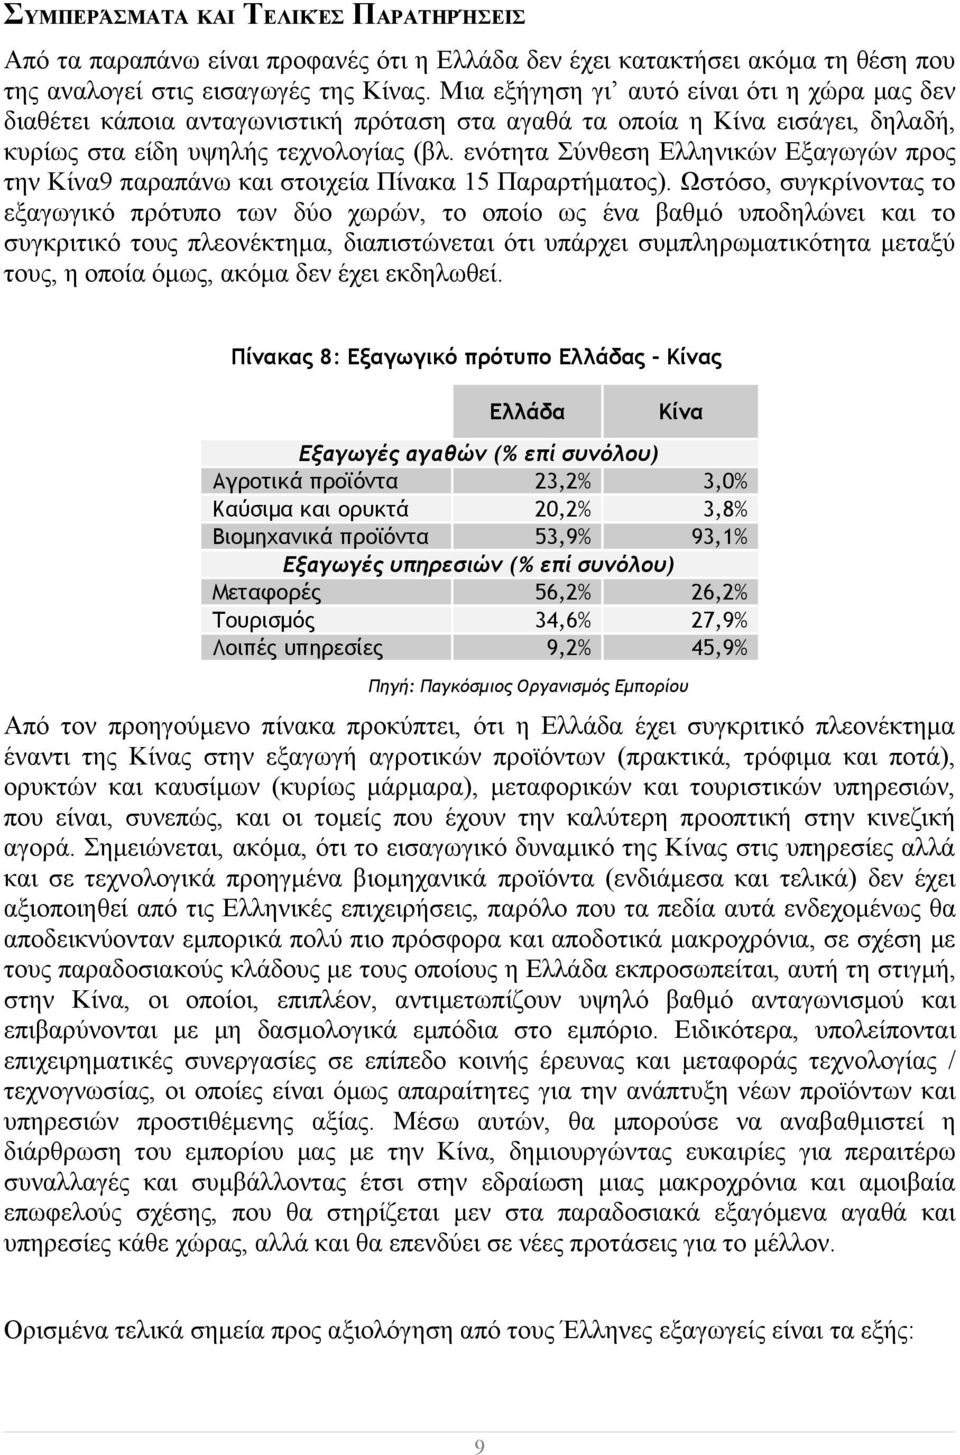 ενότητα Σύνθεση Ελληνικών Εξαγωγών προς την Κίνα9 παραπάνω και στοιχεία Πίνακα 15 Παραρτήματος).